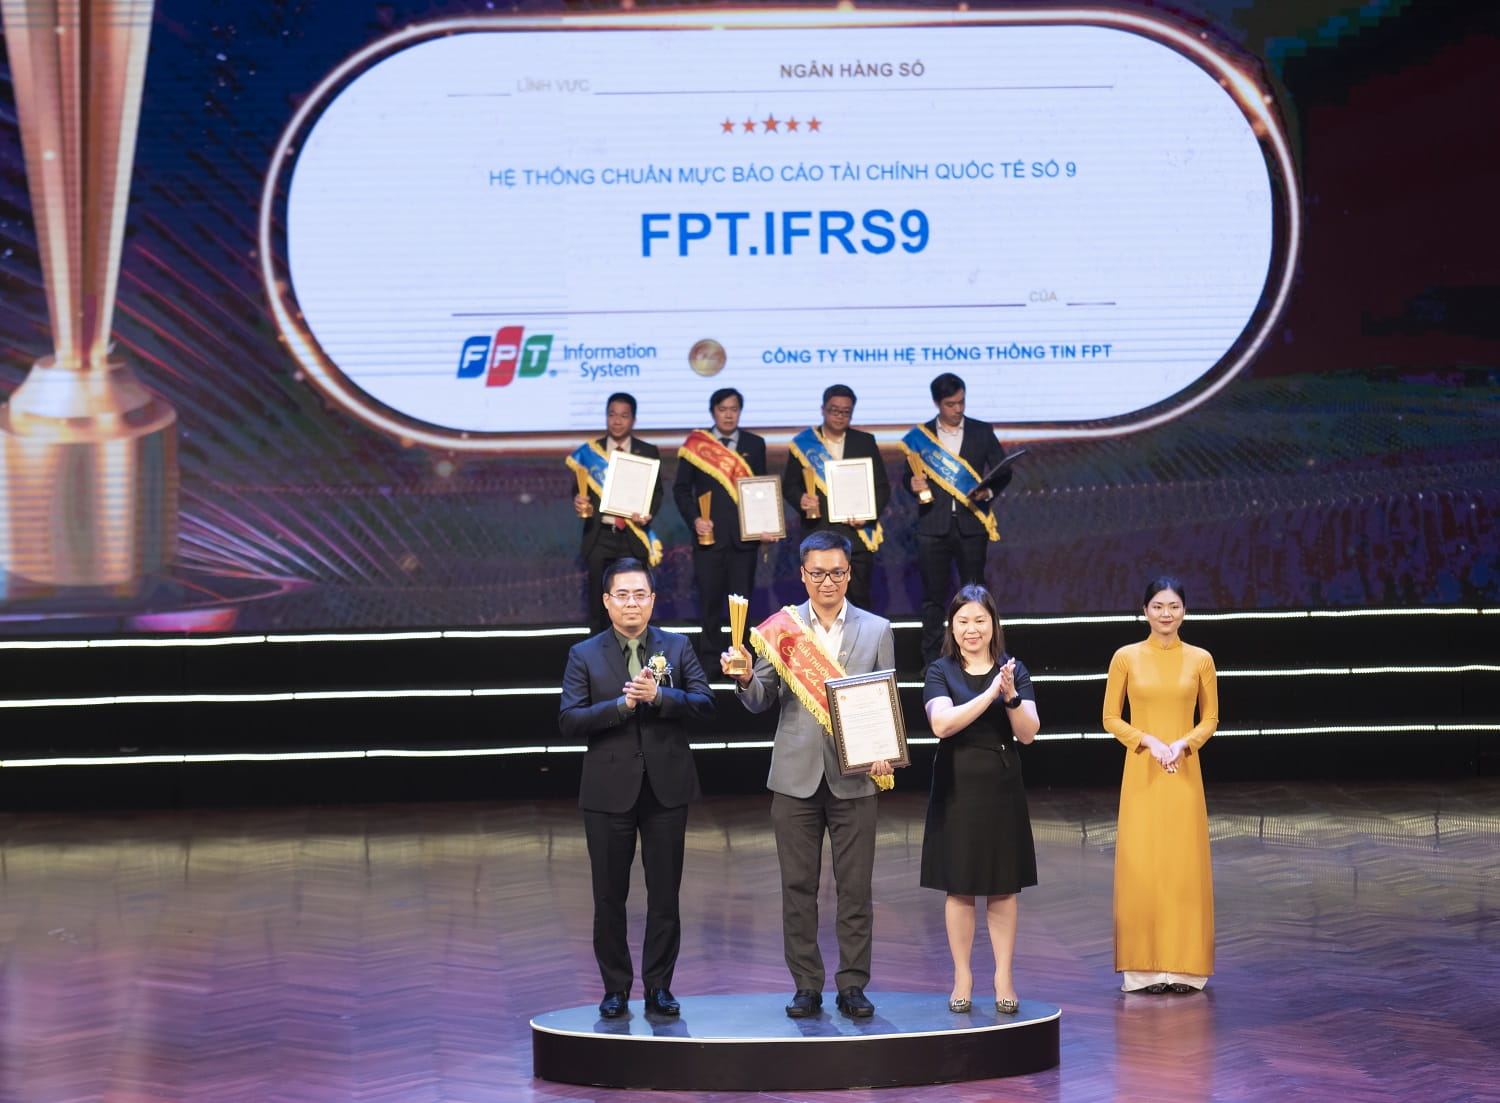 Phần mềm hệ thống chuẩn mực báo cáo tài chính quốc tế số 9 - FPT.IFRS9 đạt Chứng nhận 5 sao